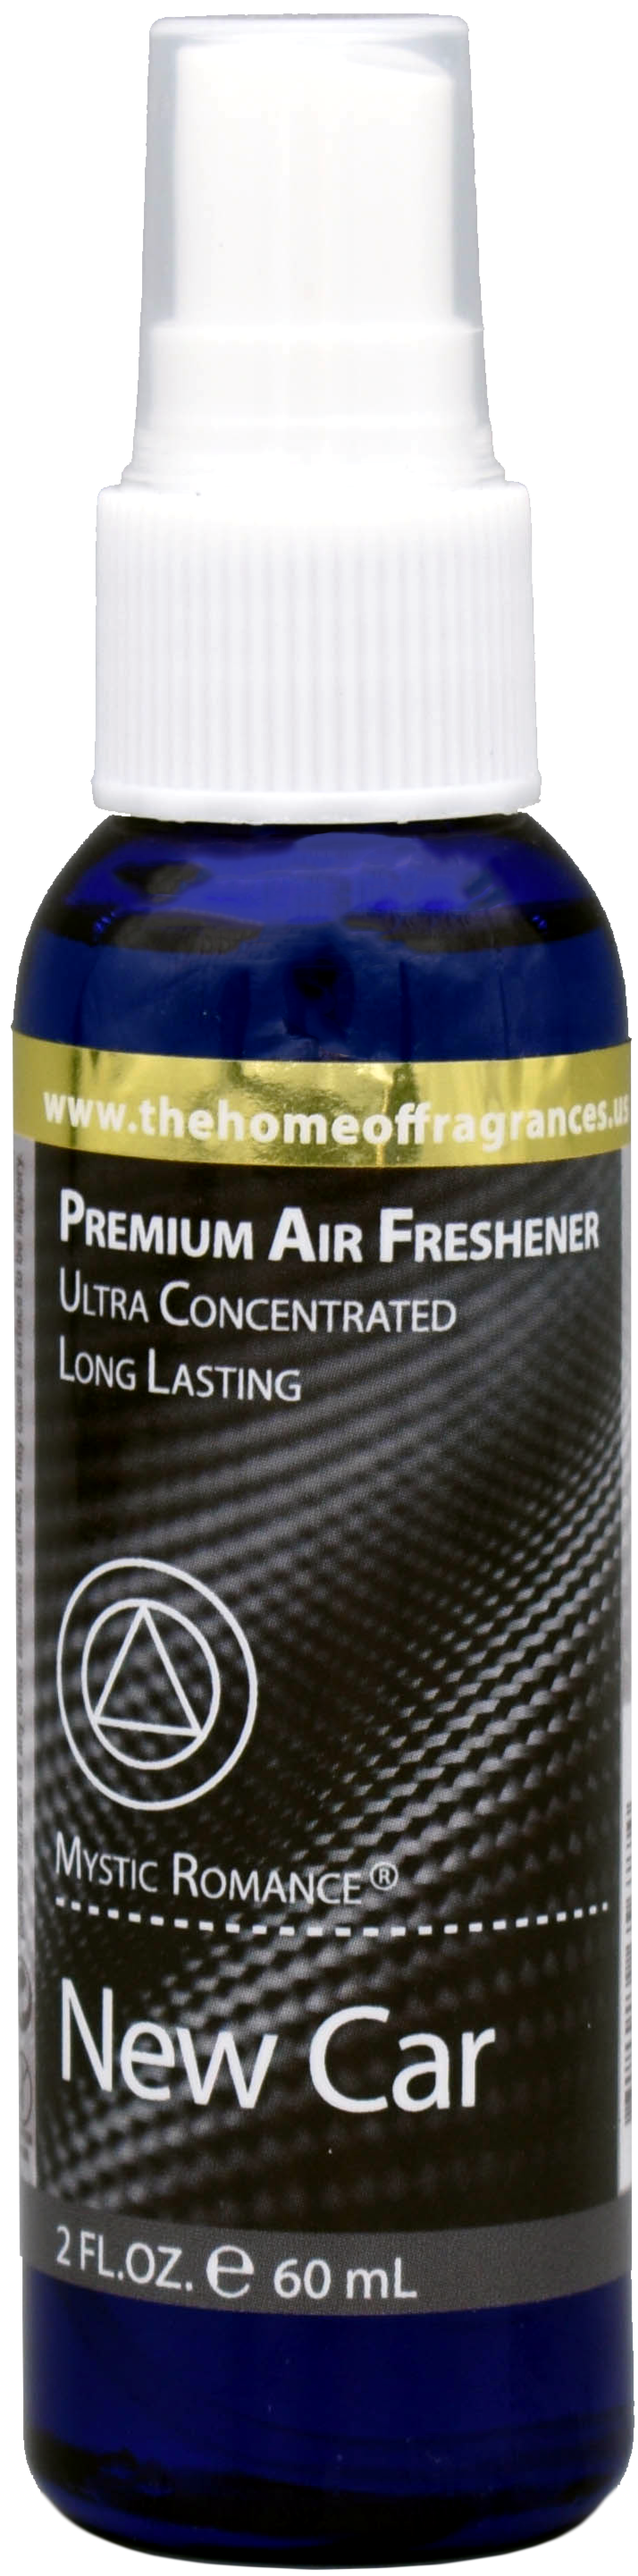 New Car Air Freshener